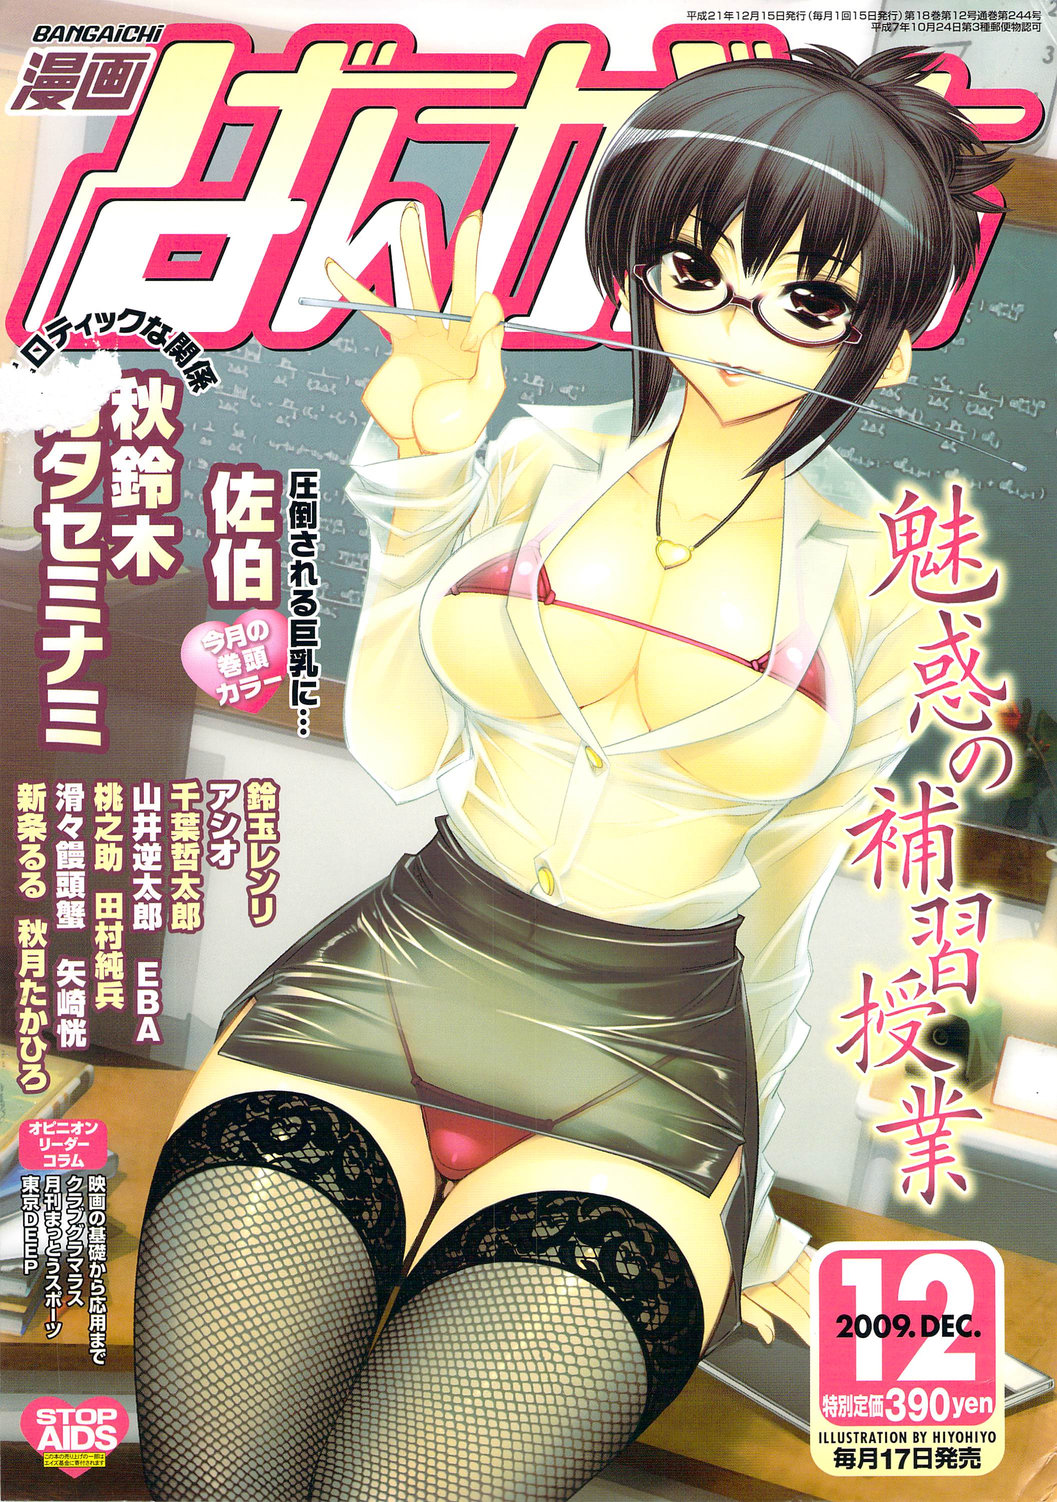 Manga Bangaichi 2009-12 漫画ばんがいち 2009年12月号